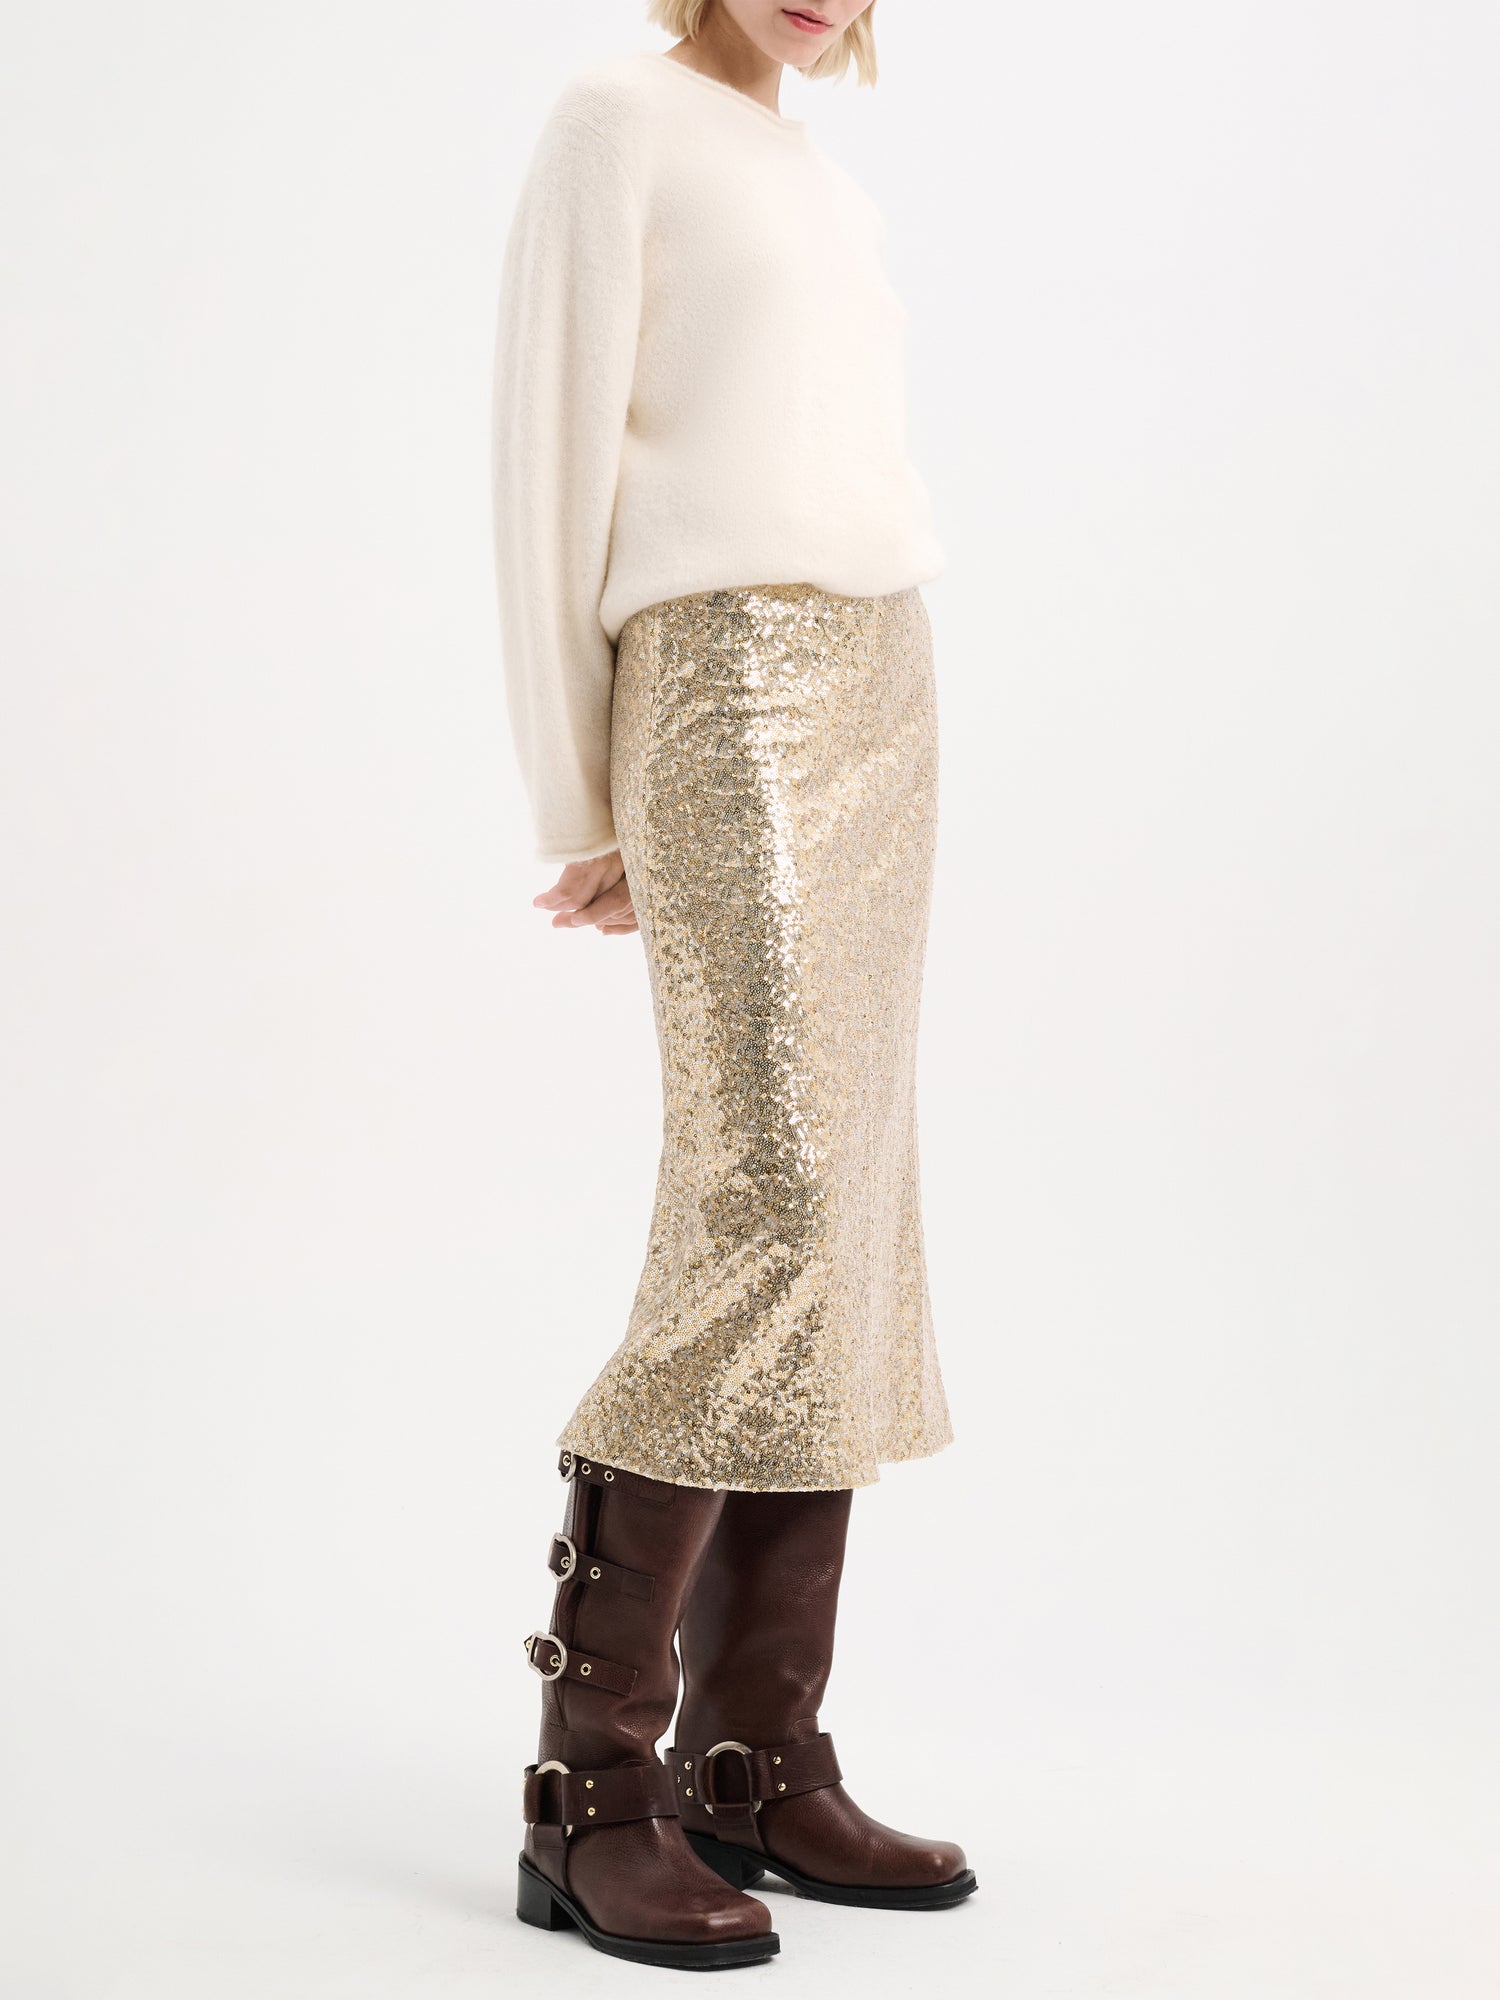 SHIMMERING COMFORT skirt, colorful sparkle